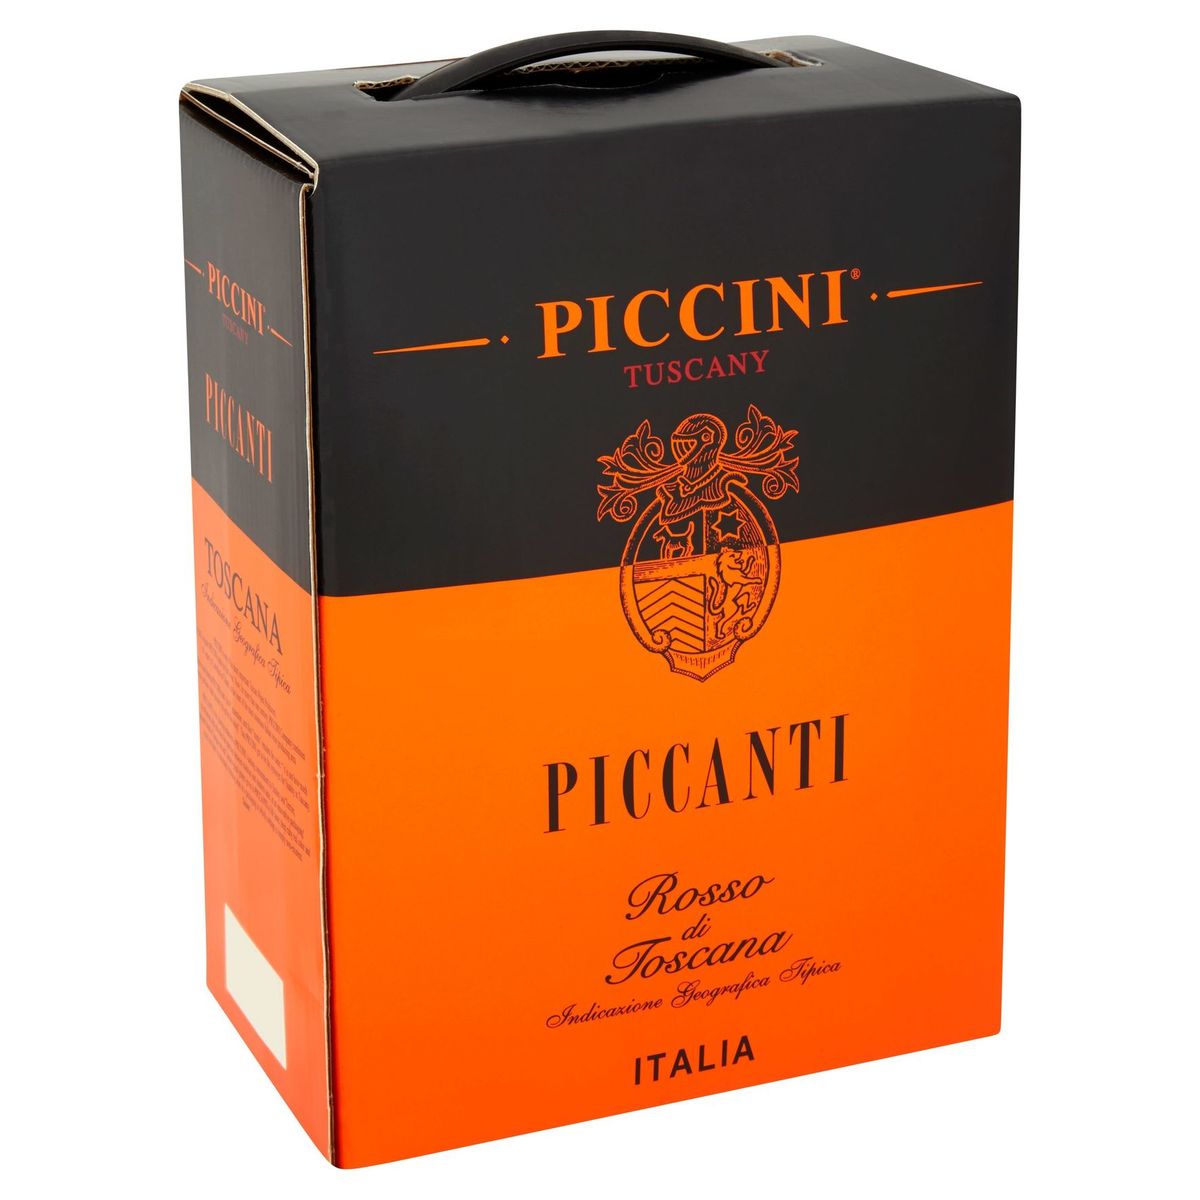 Piccini Tuscany Piccanti rosso di toscana 3000 ml